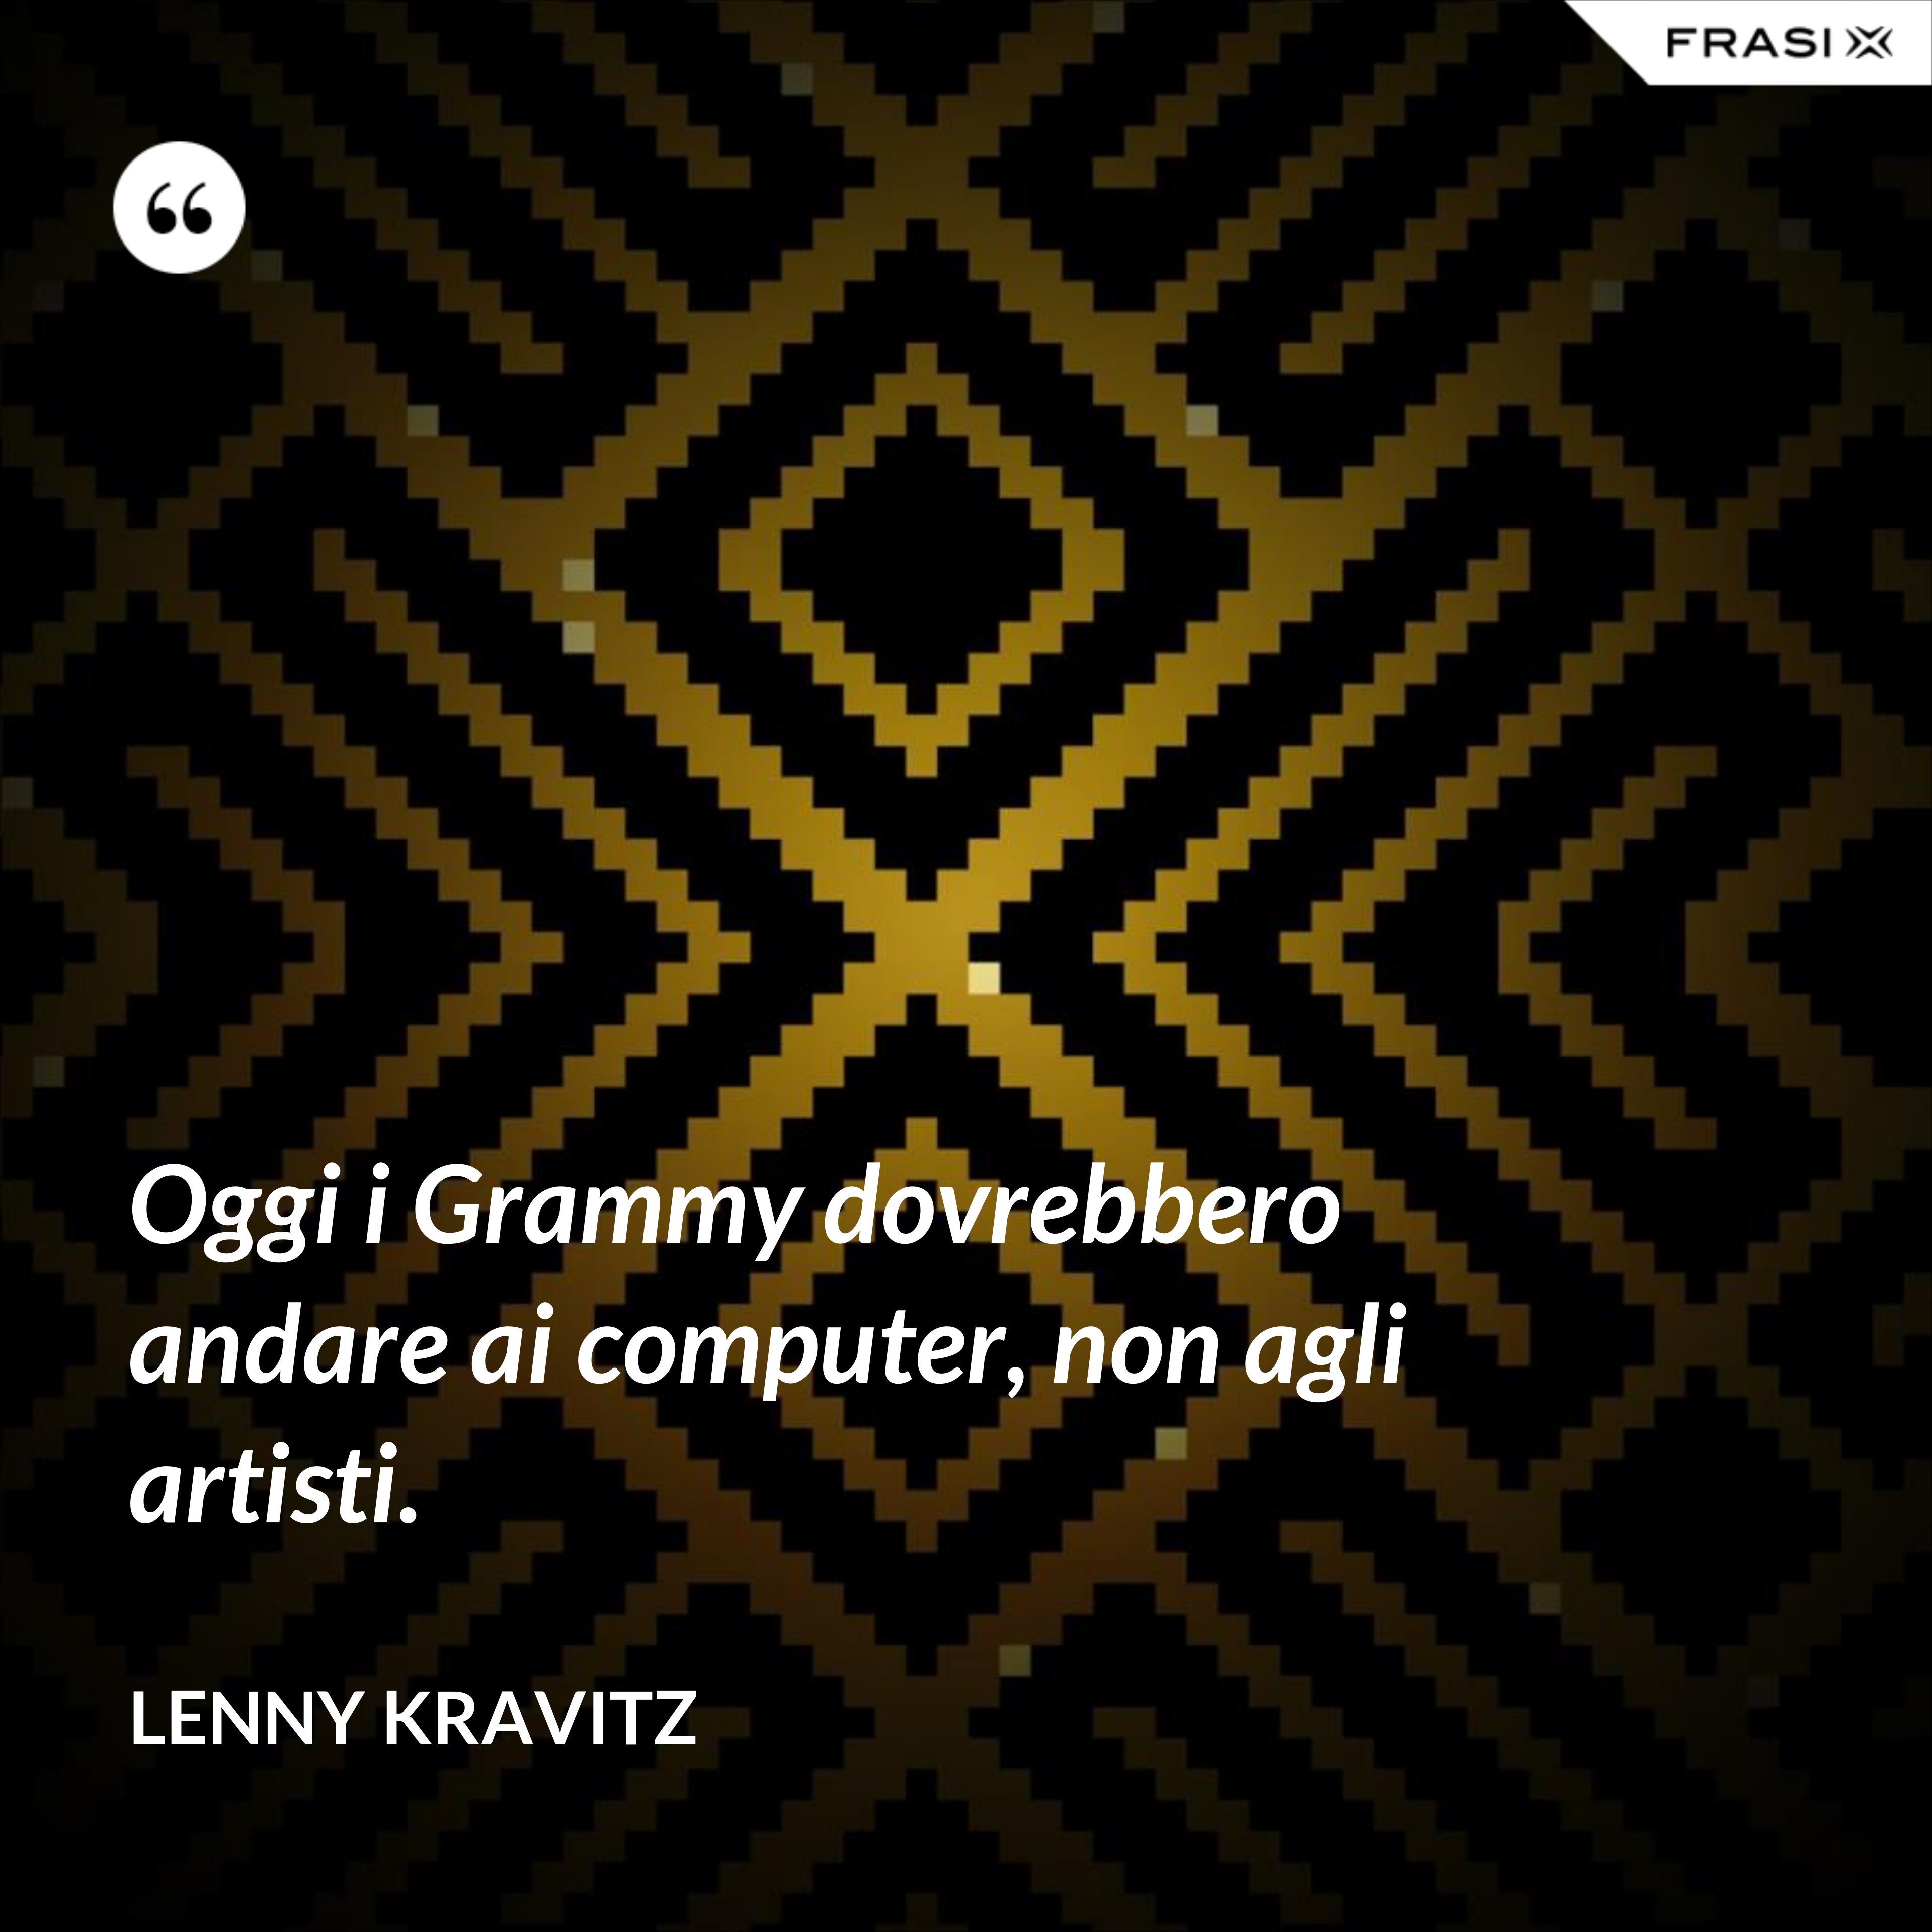 Oggi i Grammy dovrebbero andare ai computer, non agli artisti. - Lenny Kravitz